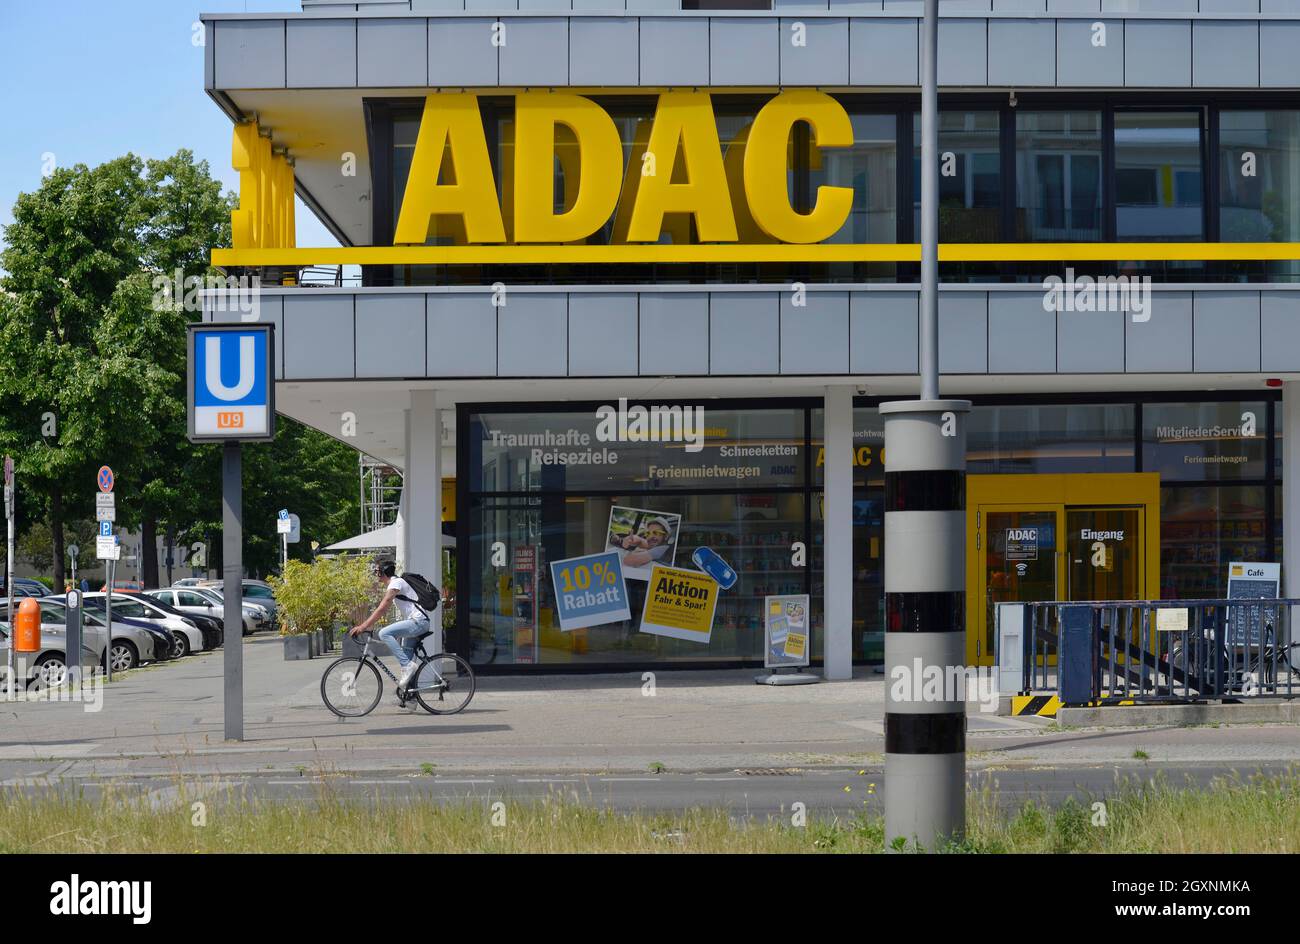 ADAC, Bundesallee, Wilmersdorf, Berlin, Germany Stock Photo